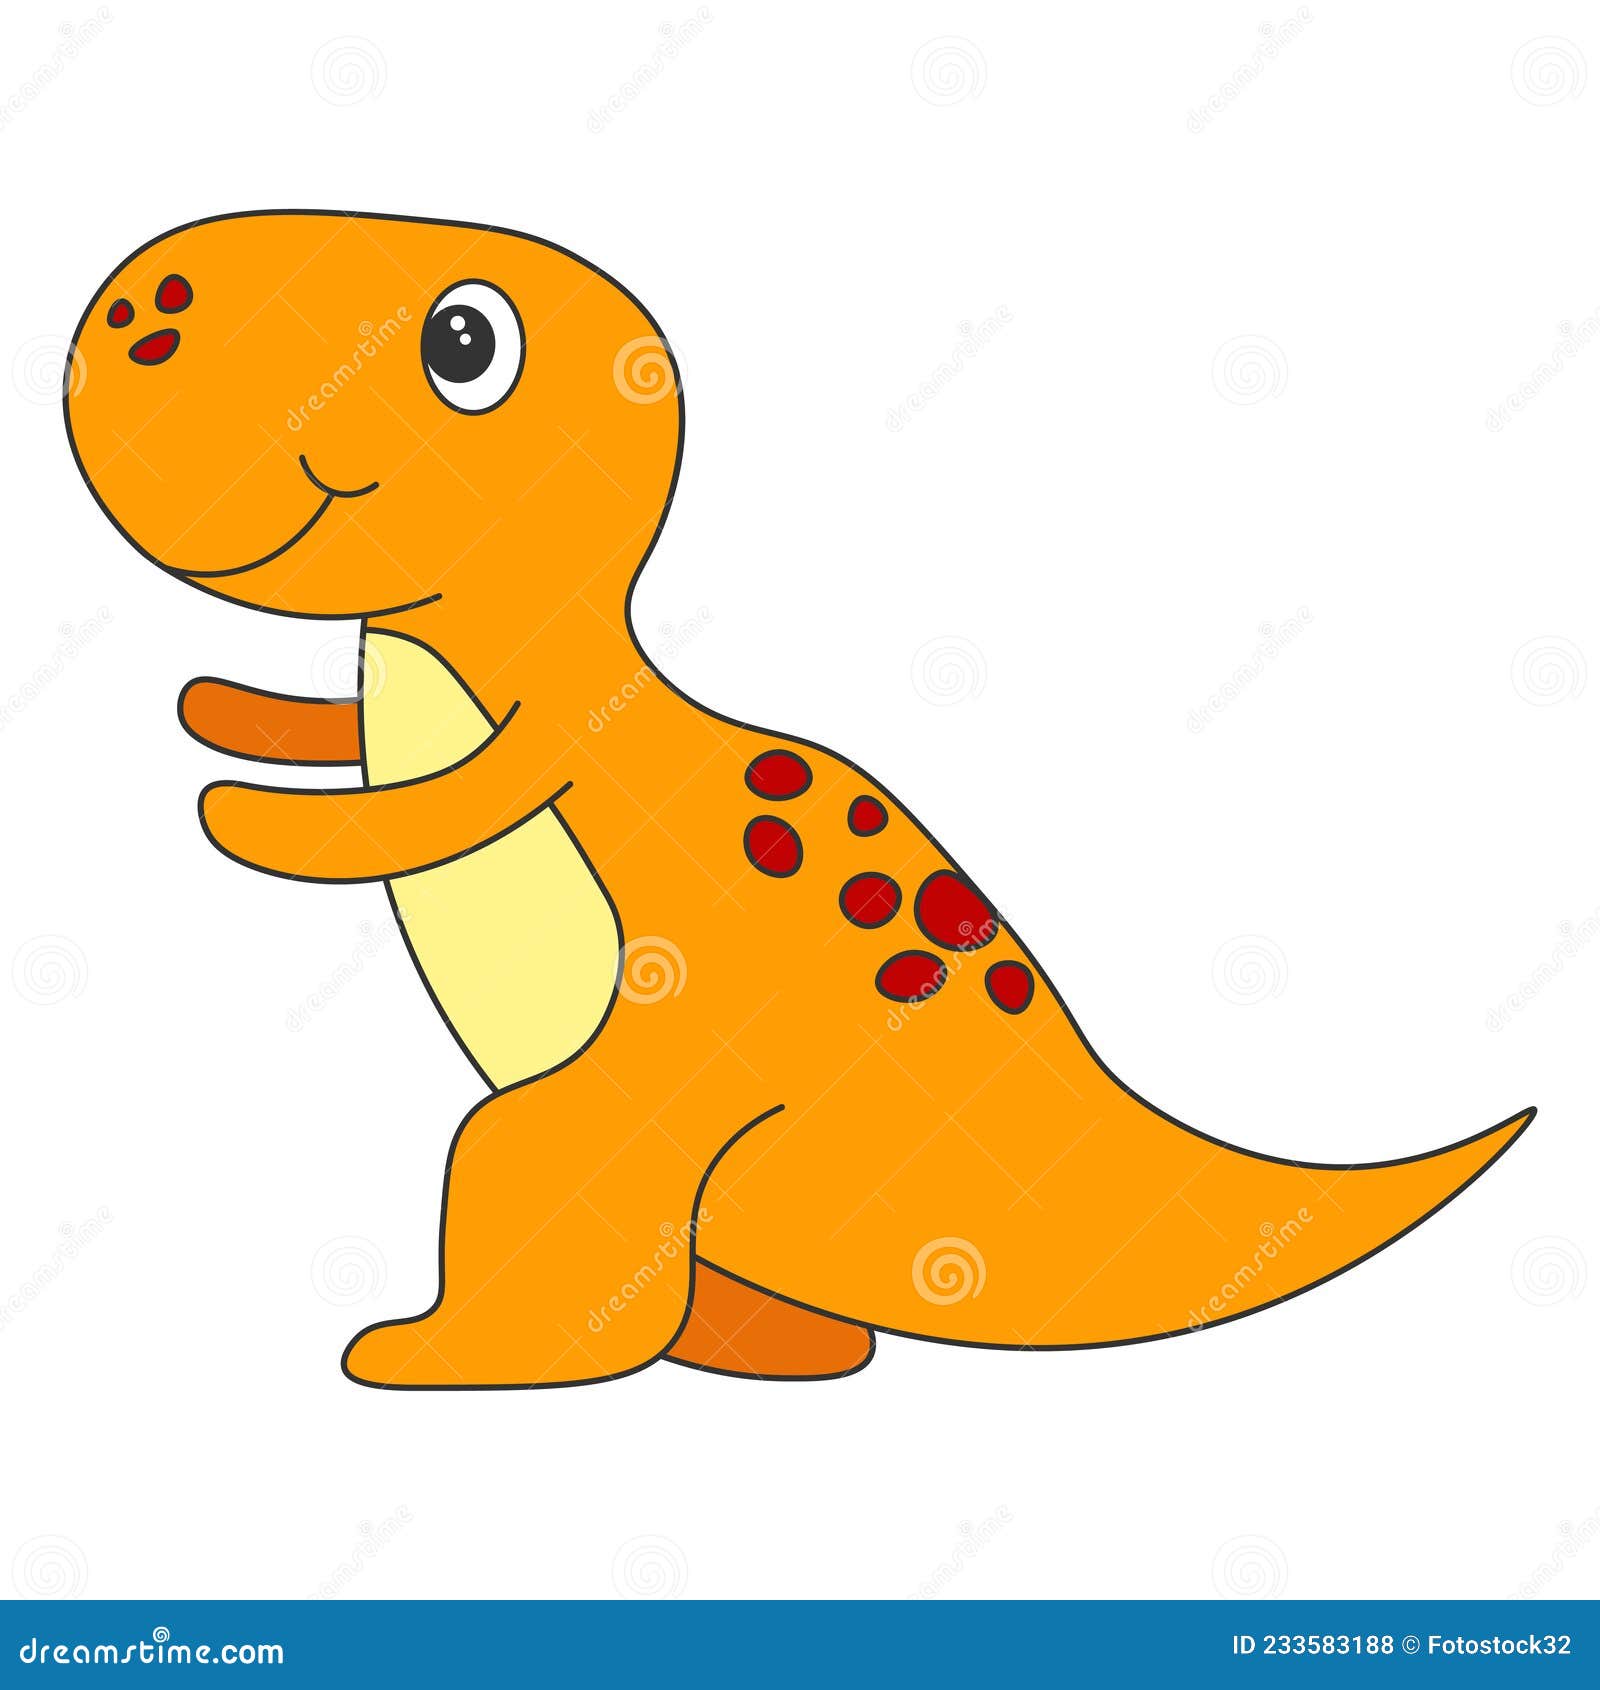 Desenho de dinossauro  Imagenes de dinosaurios infantiles, Dinosaurios  rex, Imagenes de dinosaurios animados